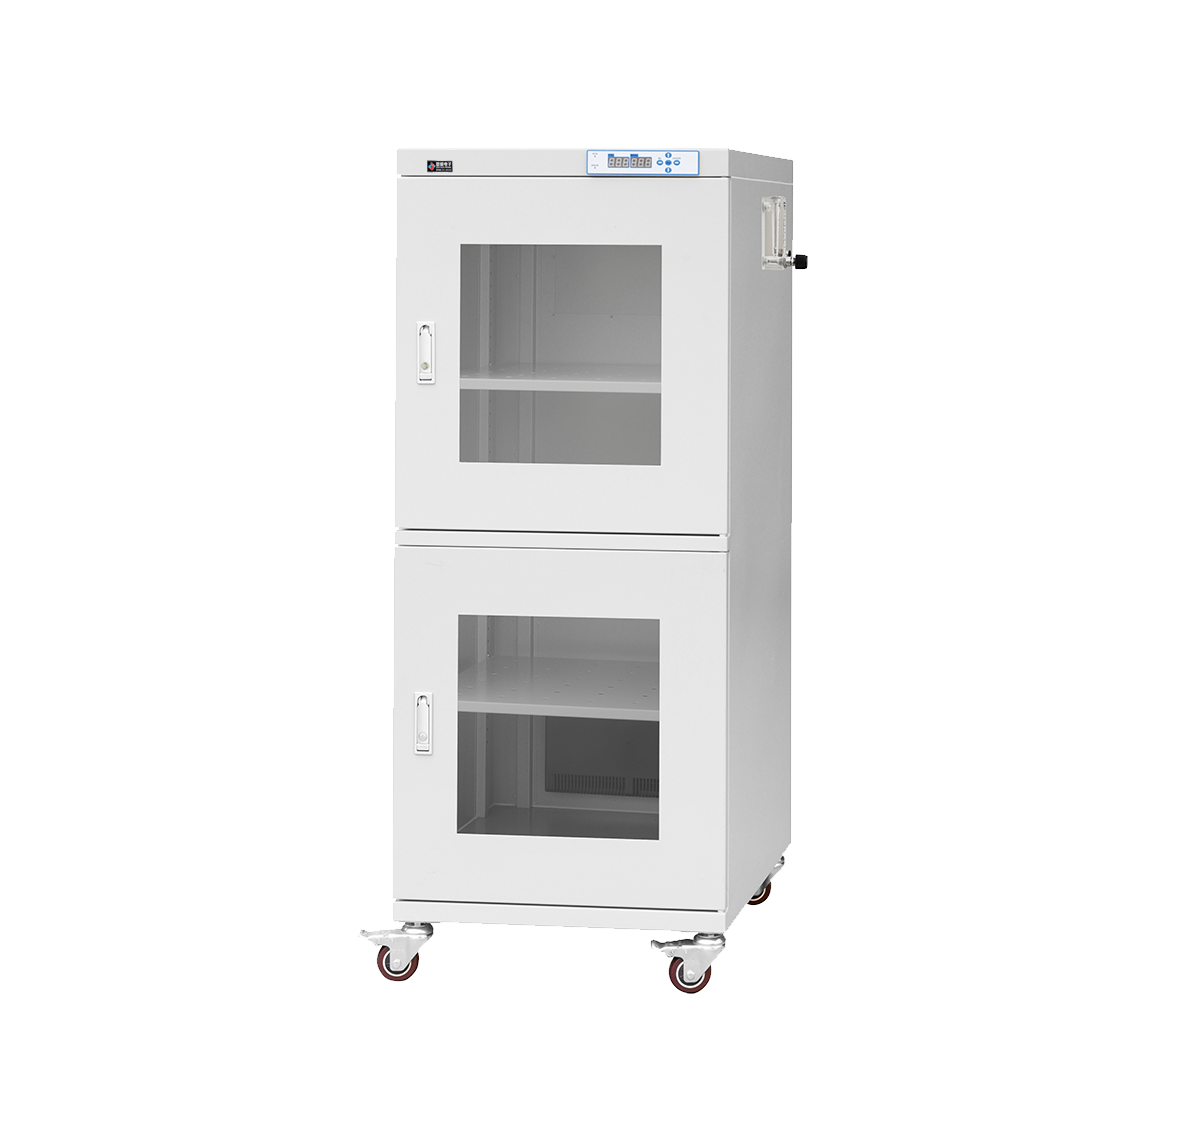 DHD550-N (550升) 智能氮气柜